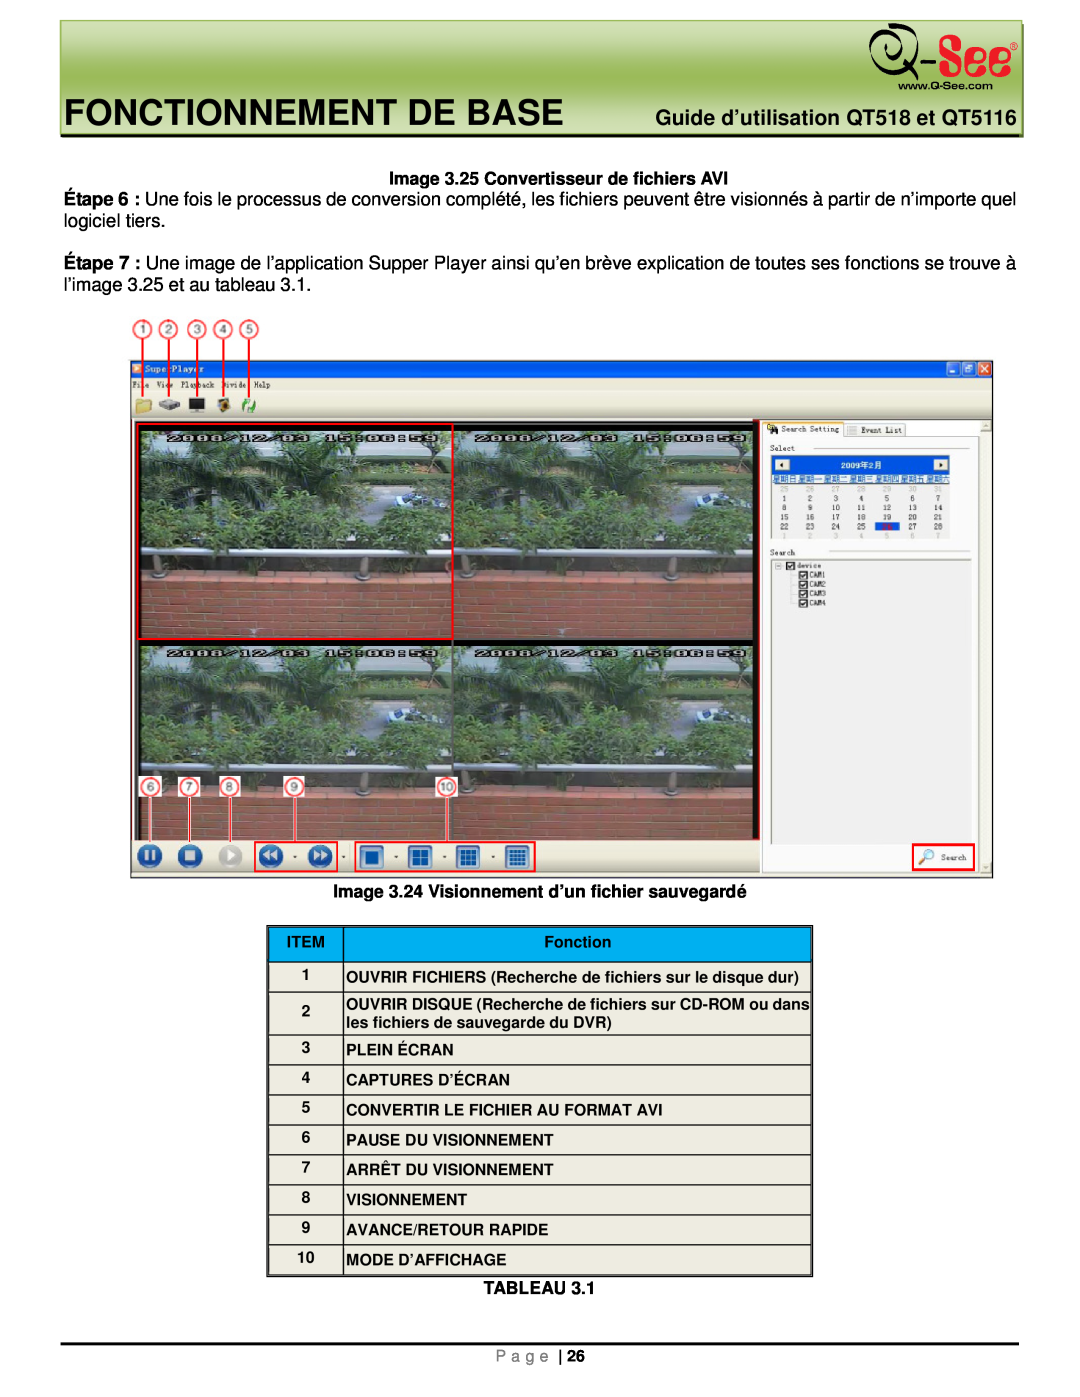 Q-See Fonctionnement De Base, Guide d’utilisation QT518 et QT5116, Image 3.25 Convertisseur de fichiers AVI, Tableau 